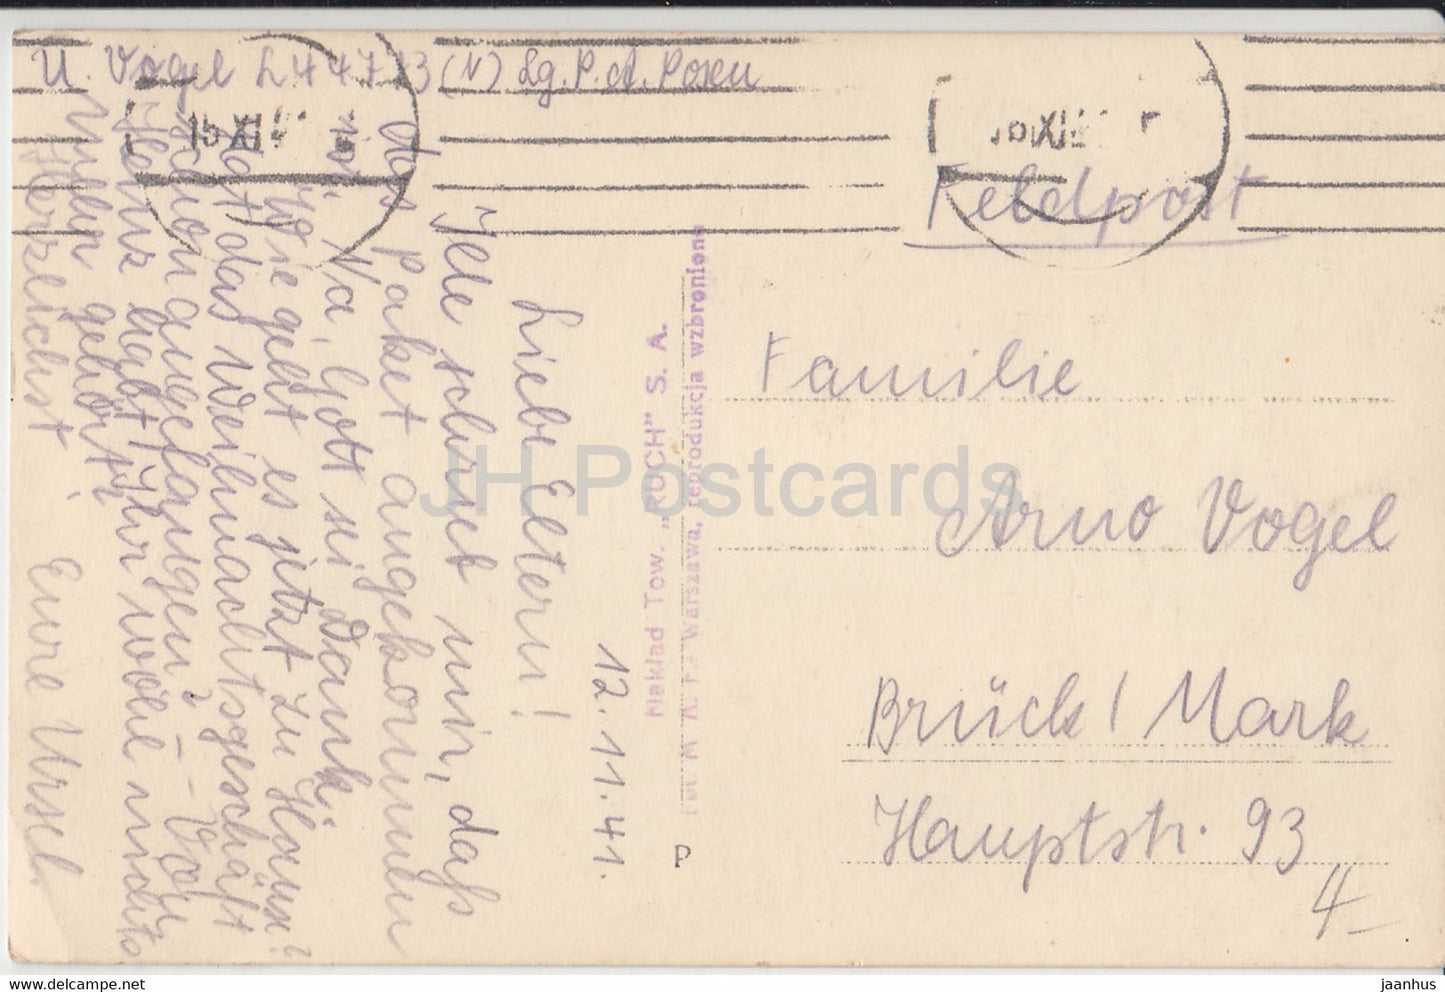 Warszawa - Krakowskie Przedmiescie - Feldpost - carte postale ancienne - 1941 - Pologne - utilisé